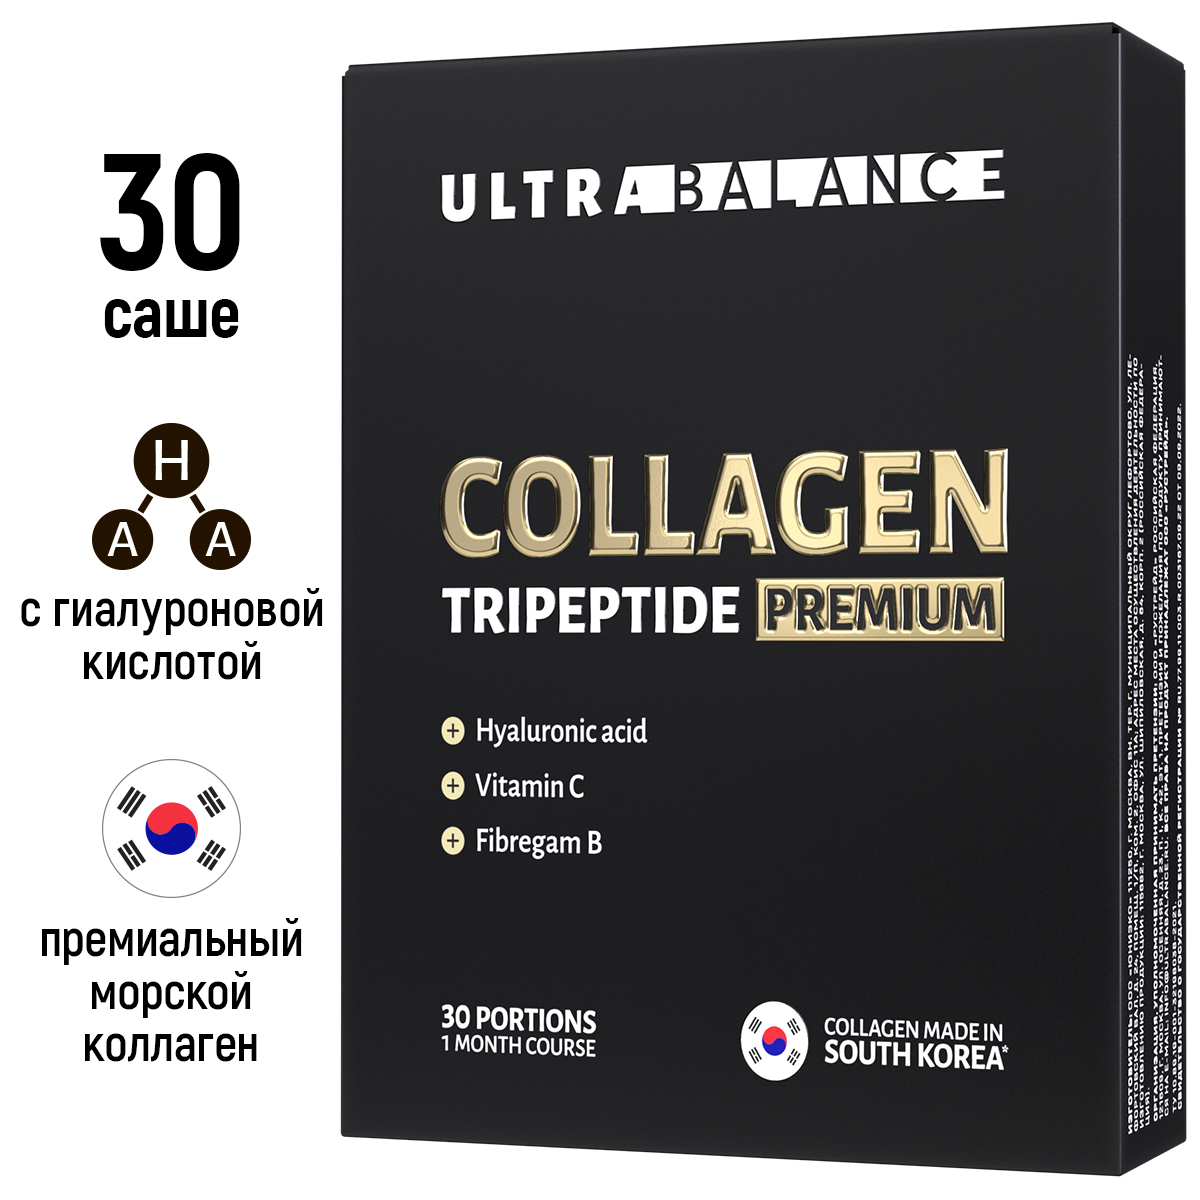 Купить Collagen Tripeptide Premium порошок, Коллаген витамины для суставов связок волос ногтей UltraBalance порошок саше 30 шт, Россия